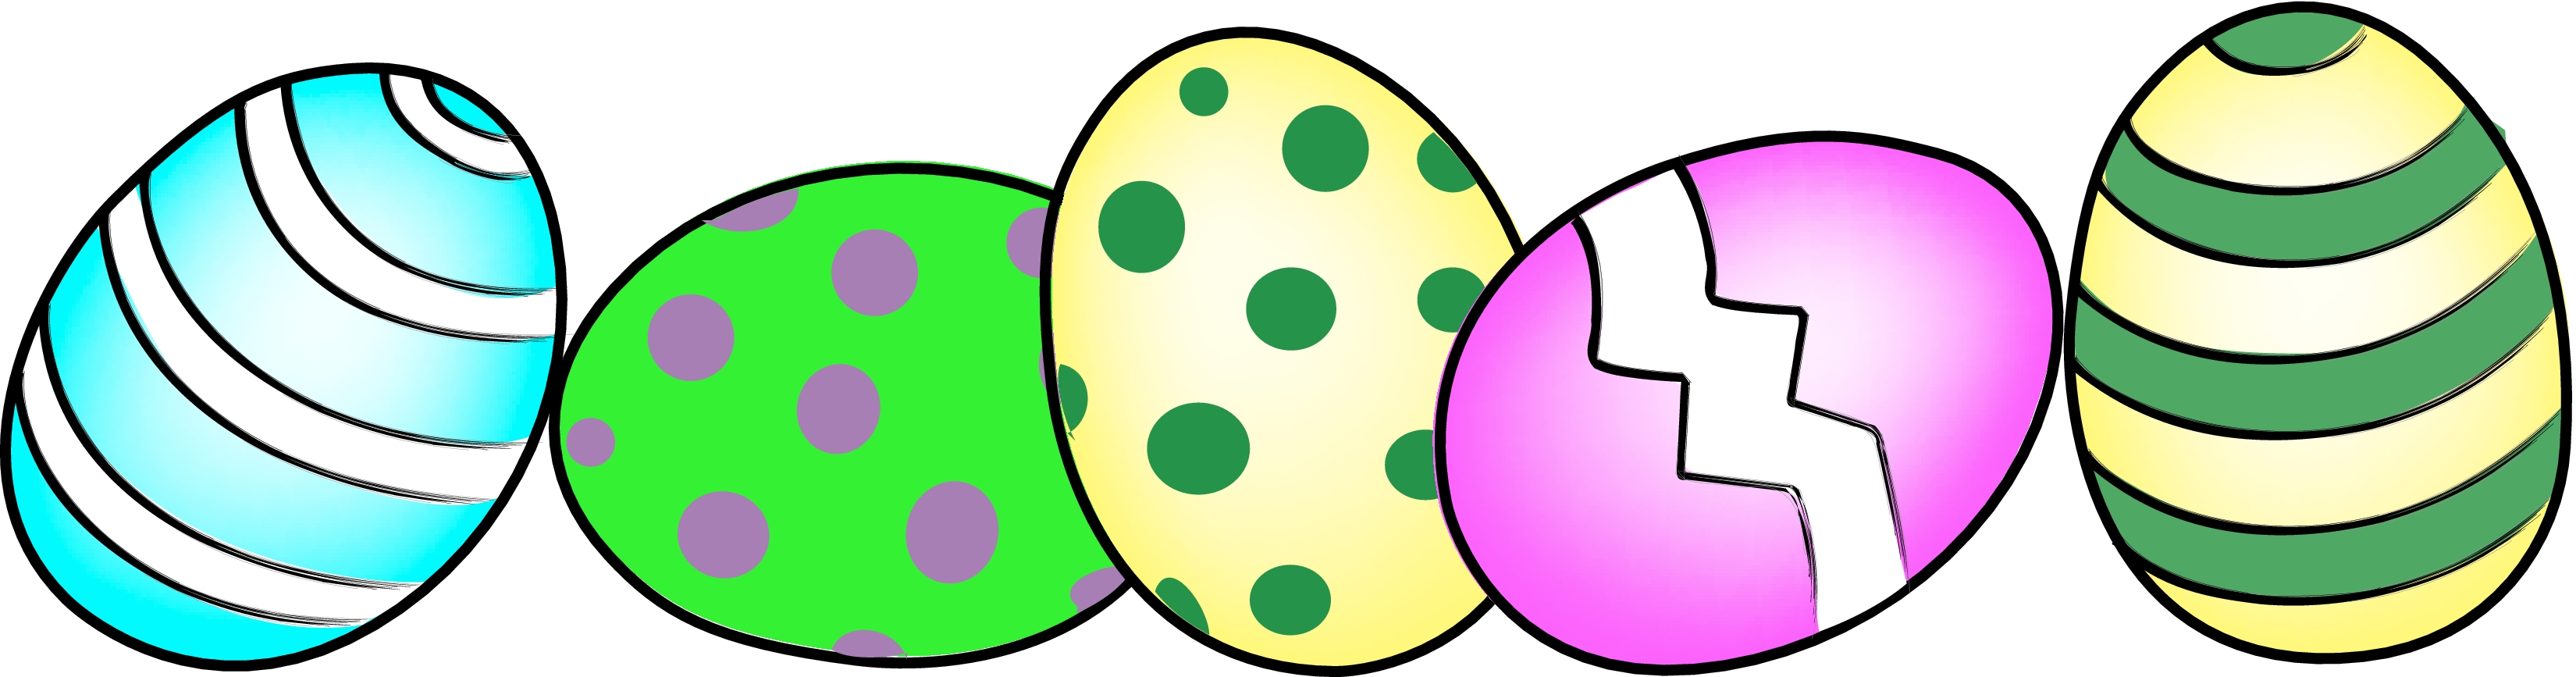 easter egg clipart - Free Easter Egg Clip Art